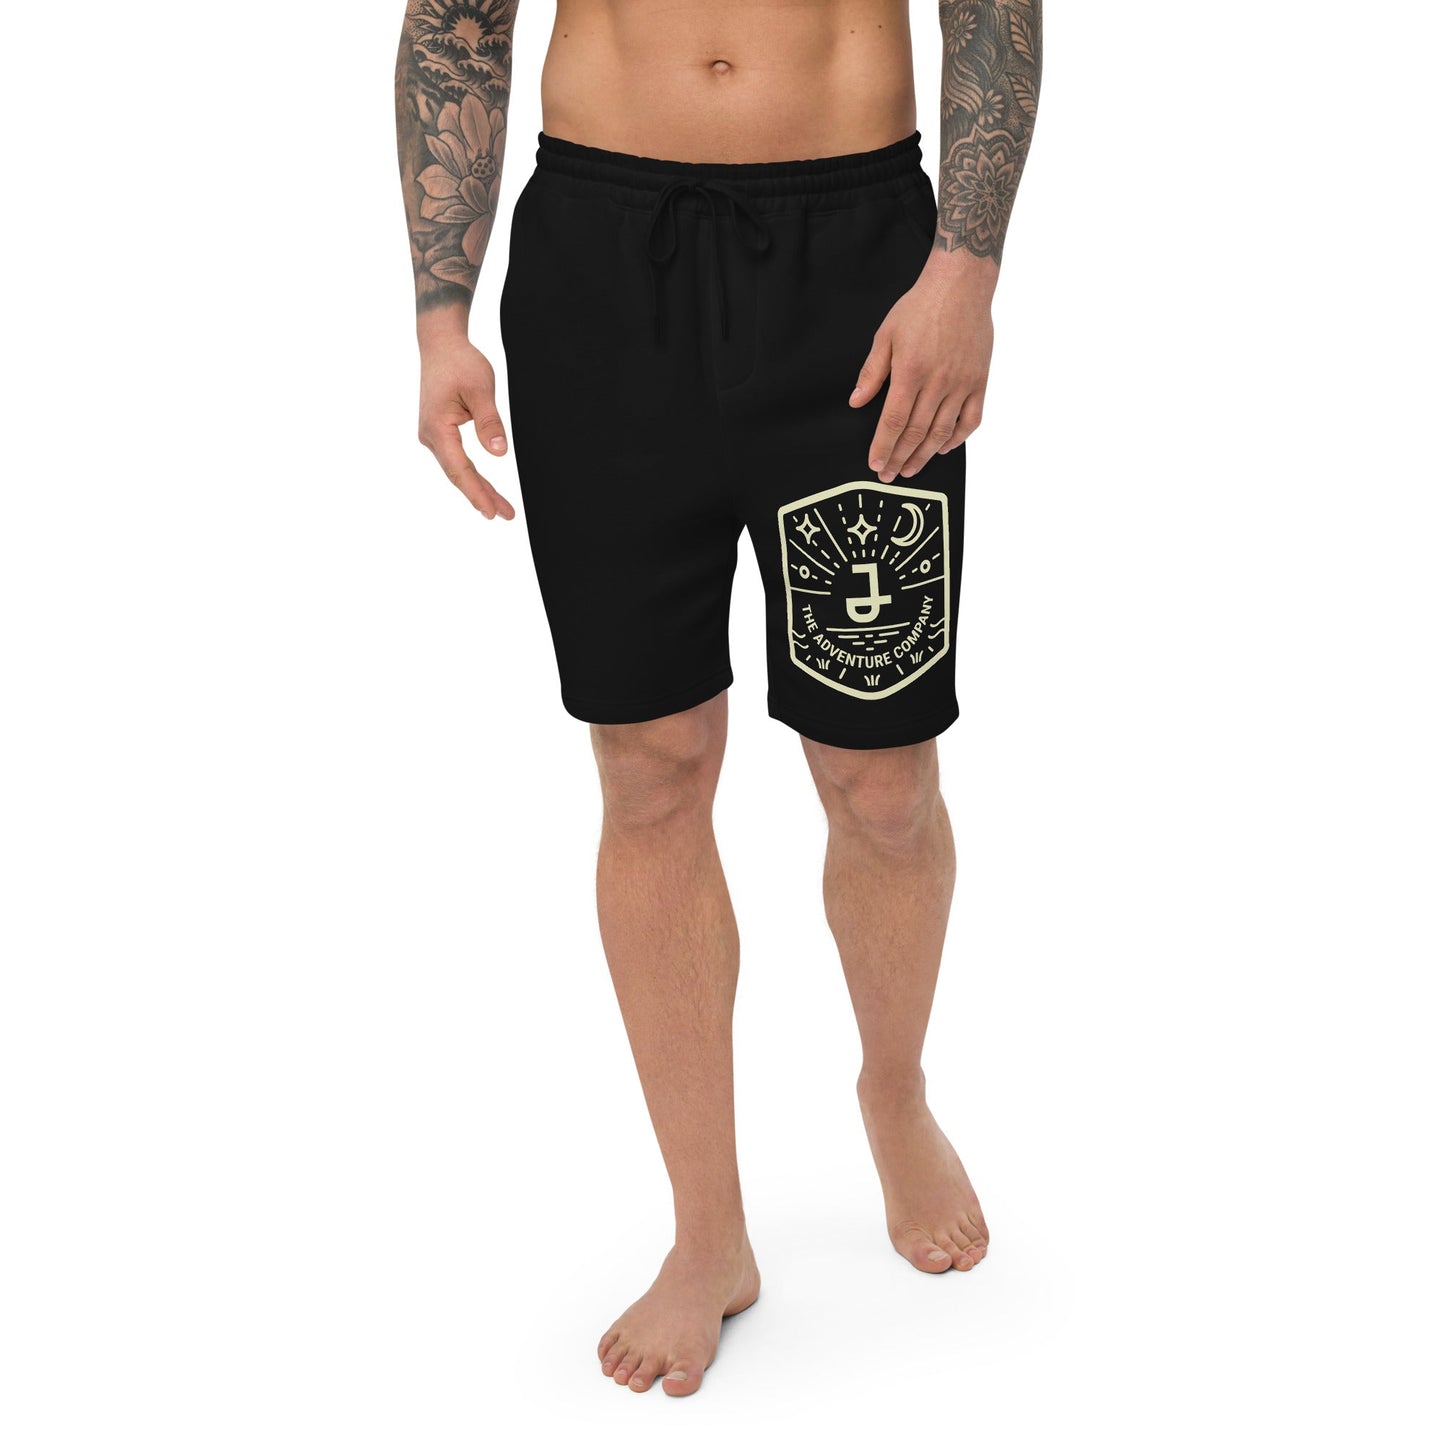 JordiLight - Men's fleece shorts